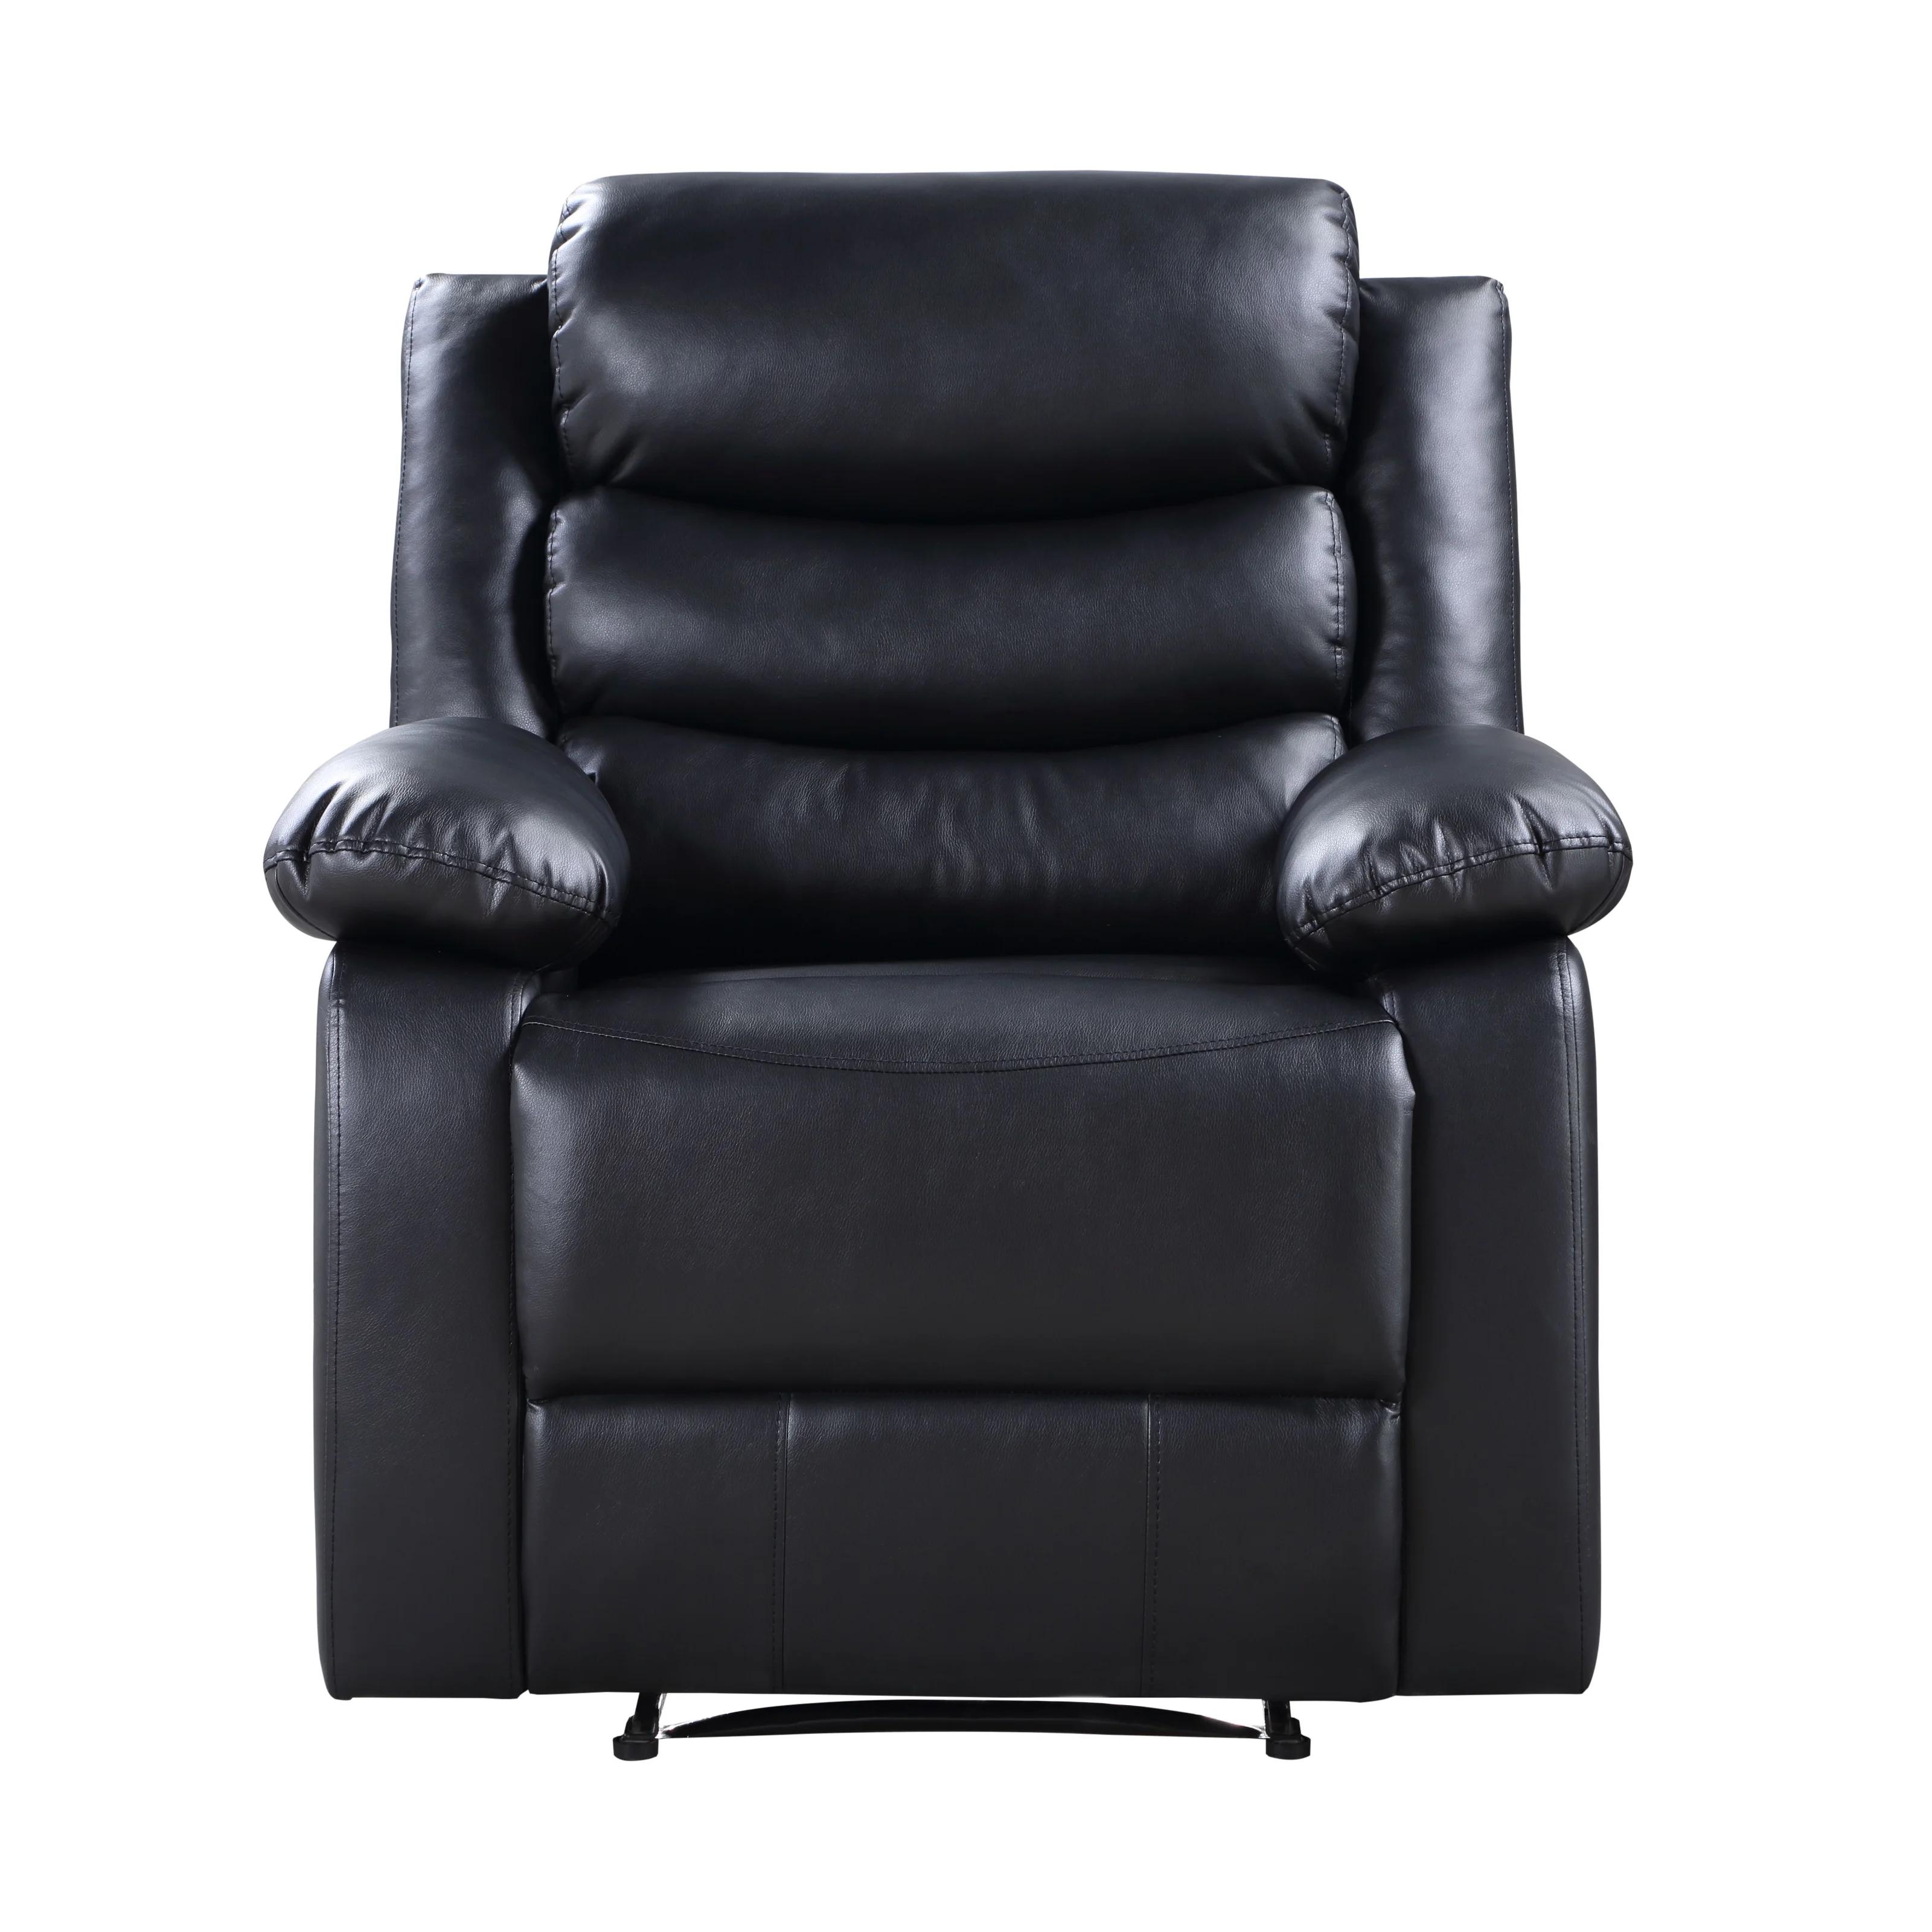 

    
Acme Furniture Eilbra Recliner Black 56910
